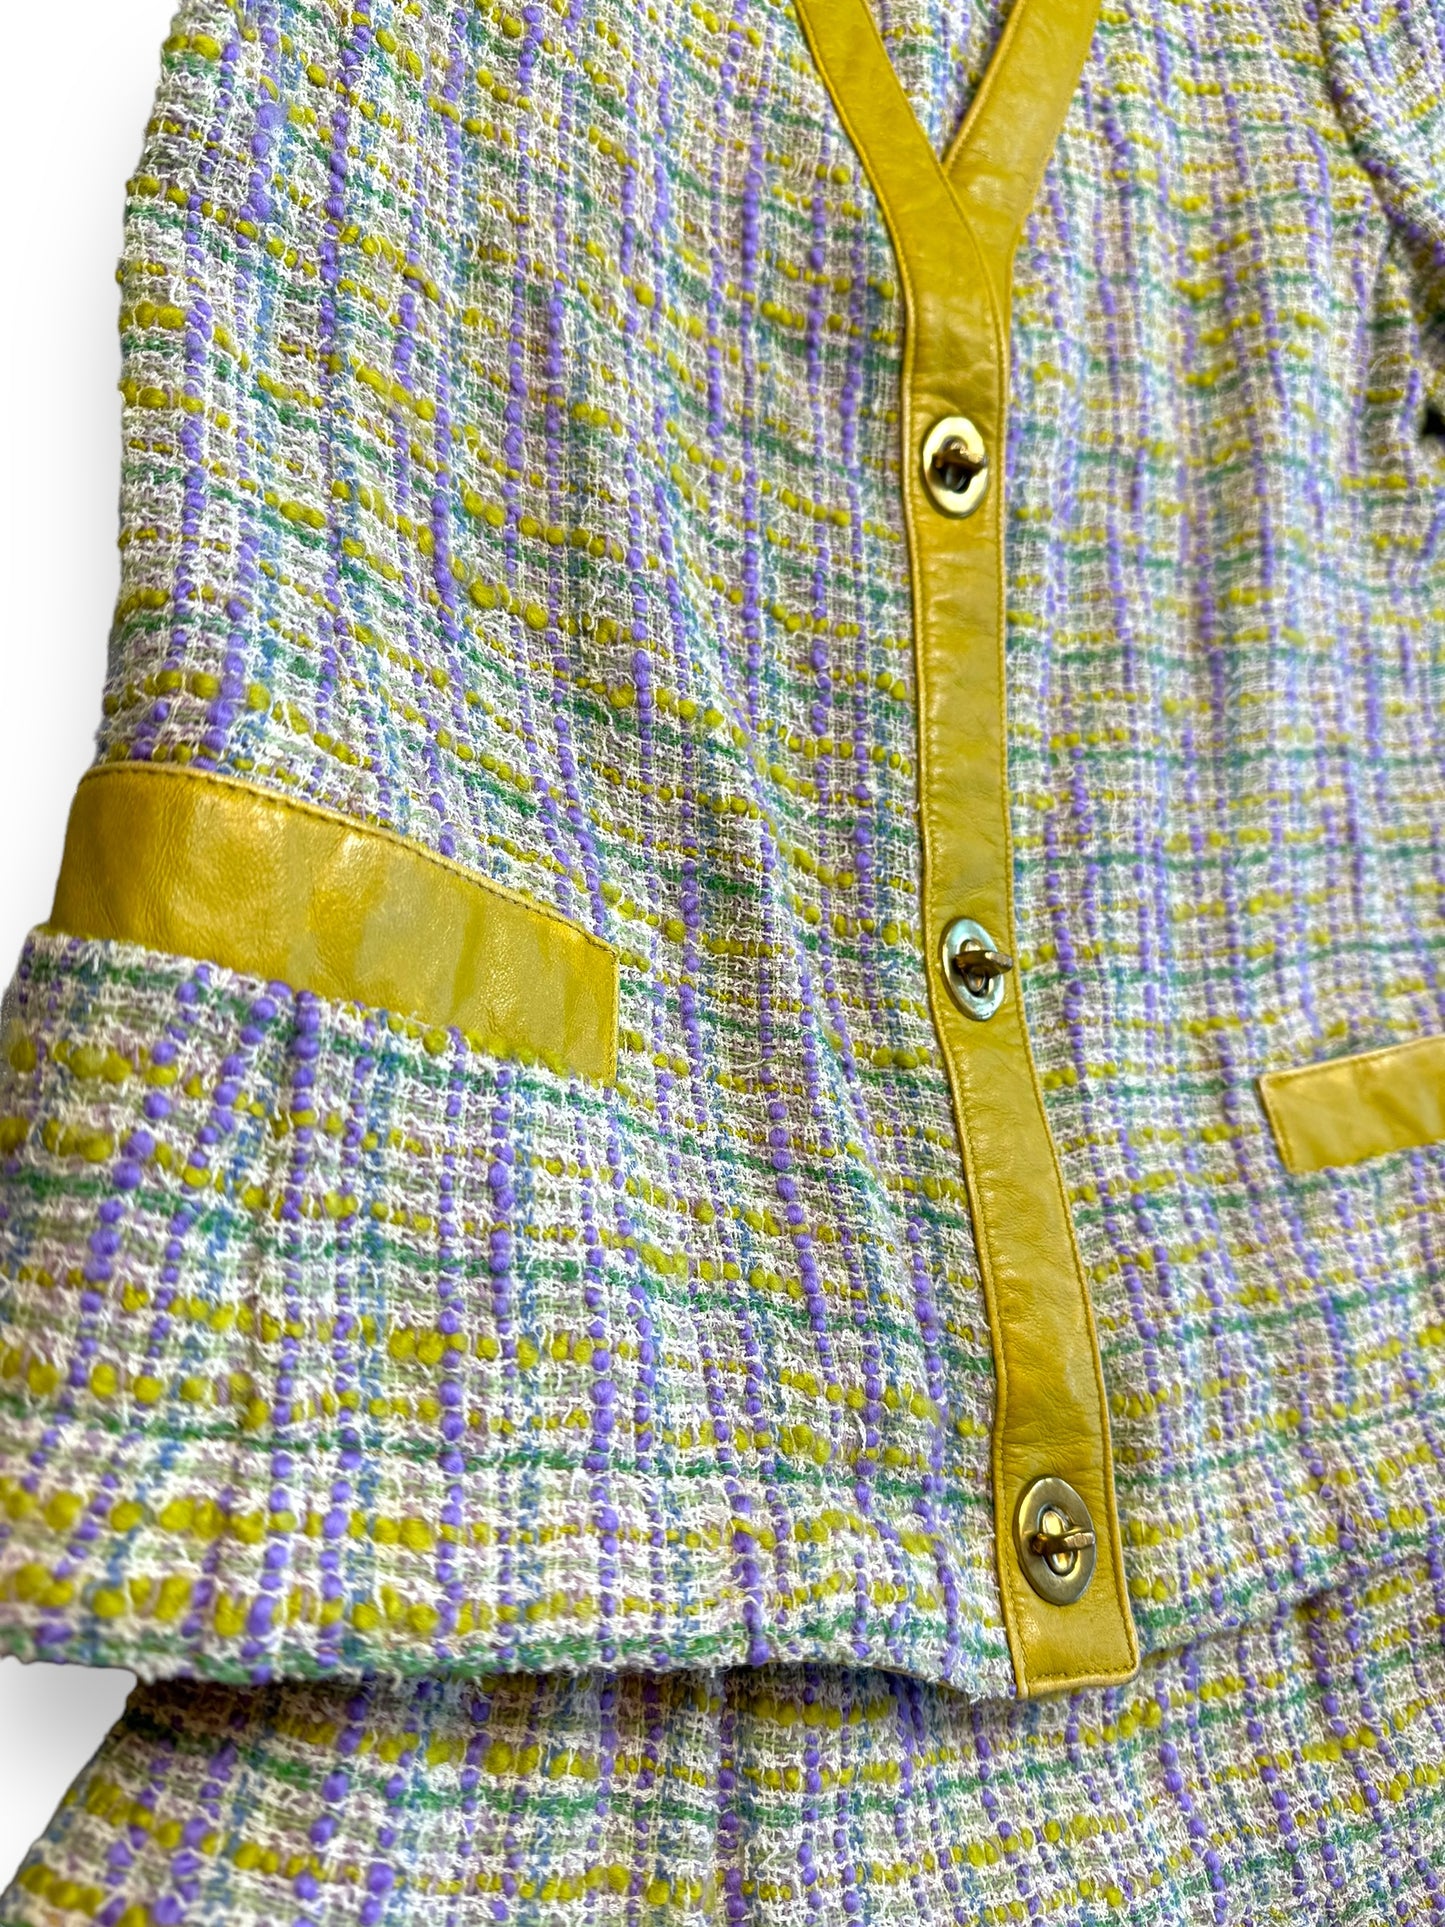 Vintage Bonnie Cashin Sills Tweed 2 Piece Suit